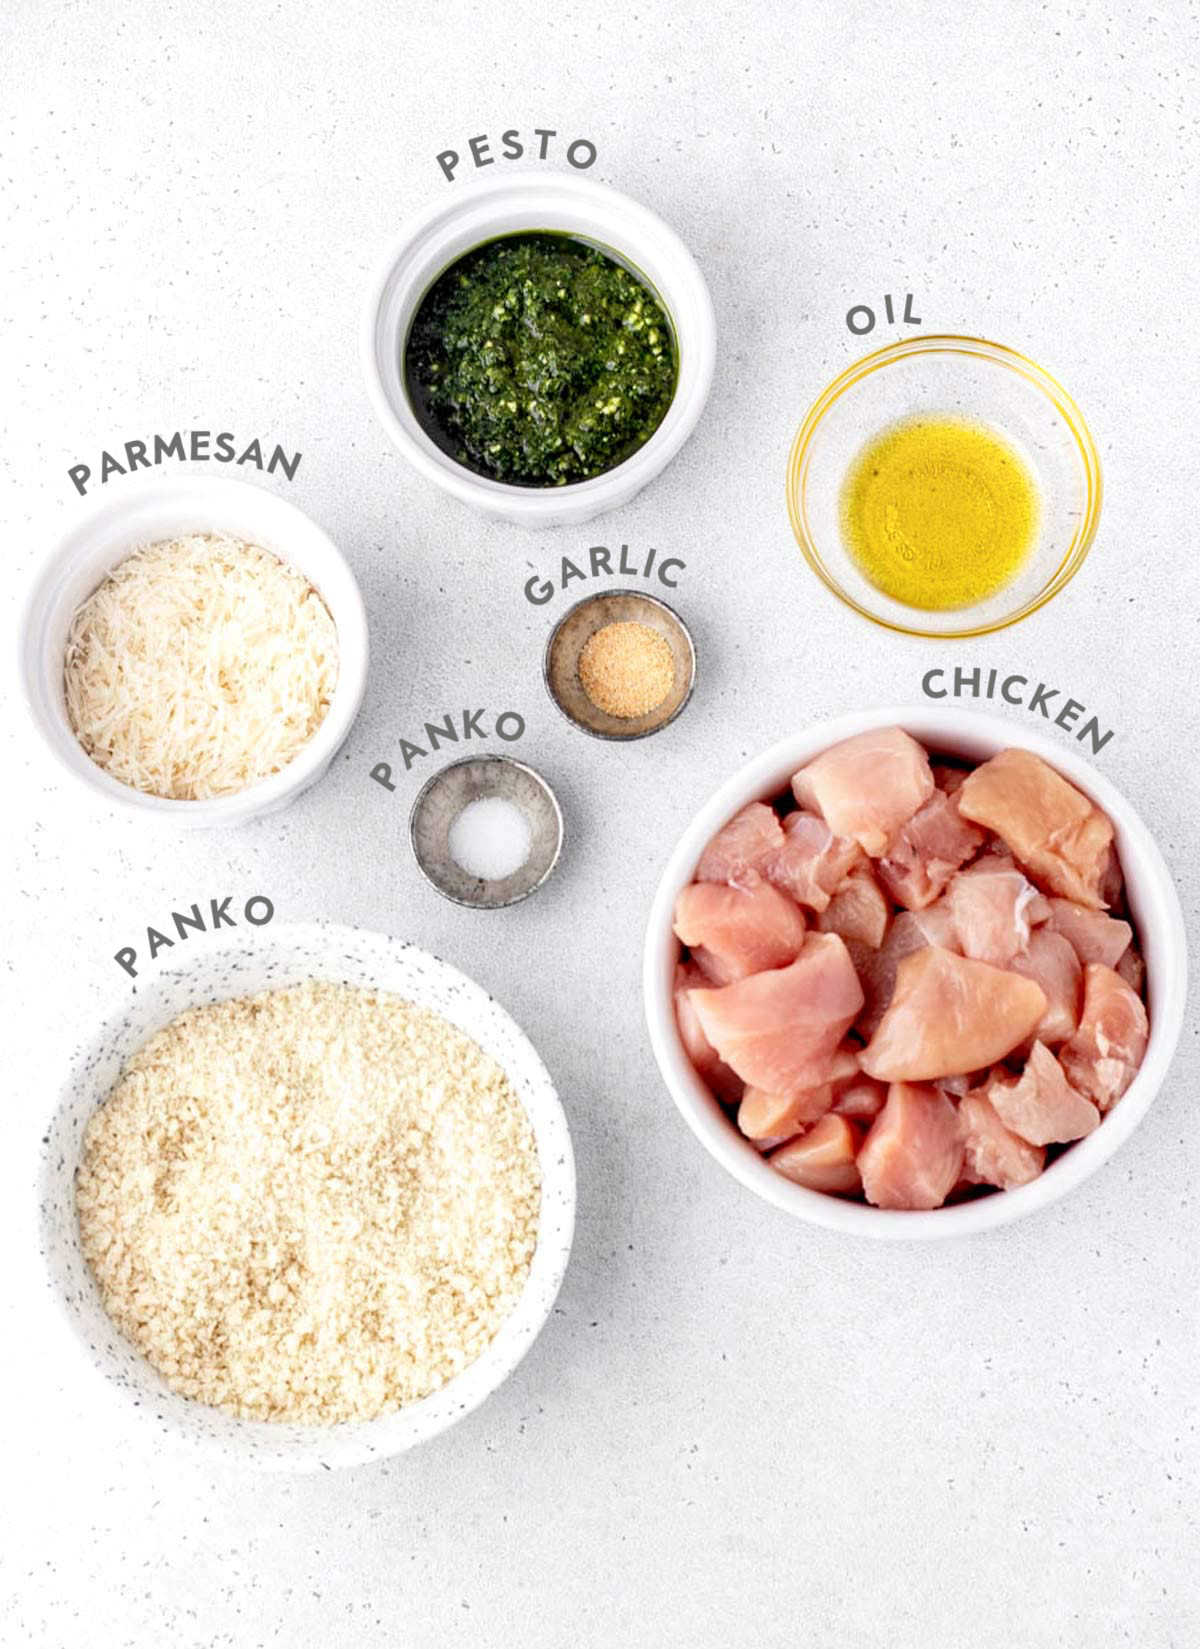 Ingredients for pesto chicken bites recipe.